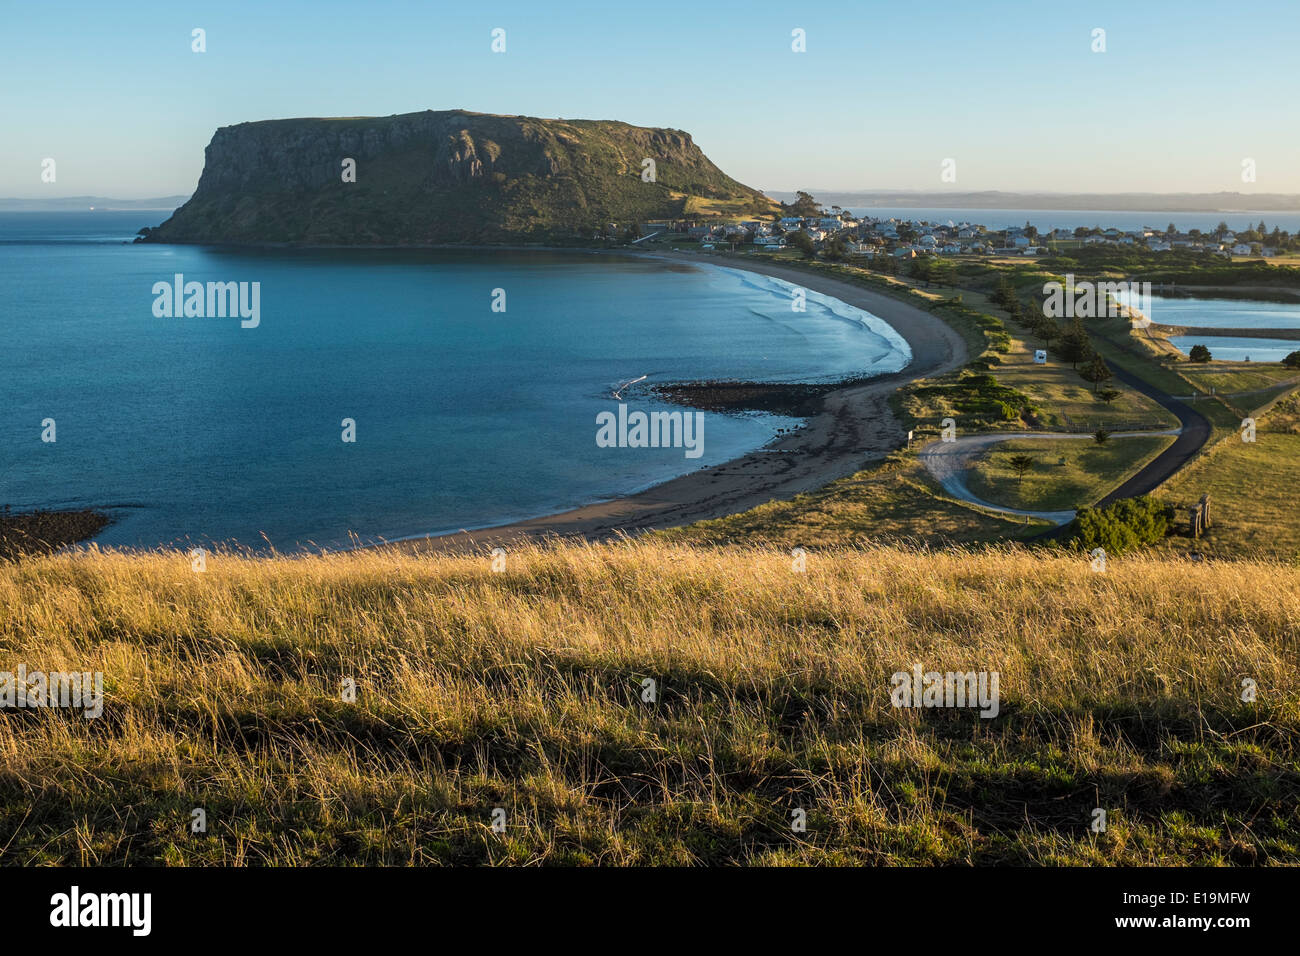 La formazione geologica nota come il dado a Stanley in Tasmania Foto Stock